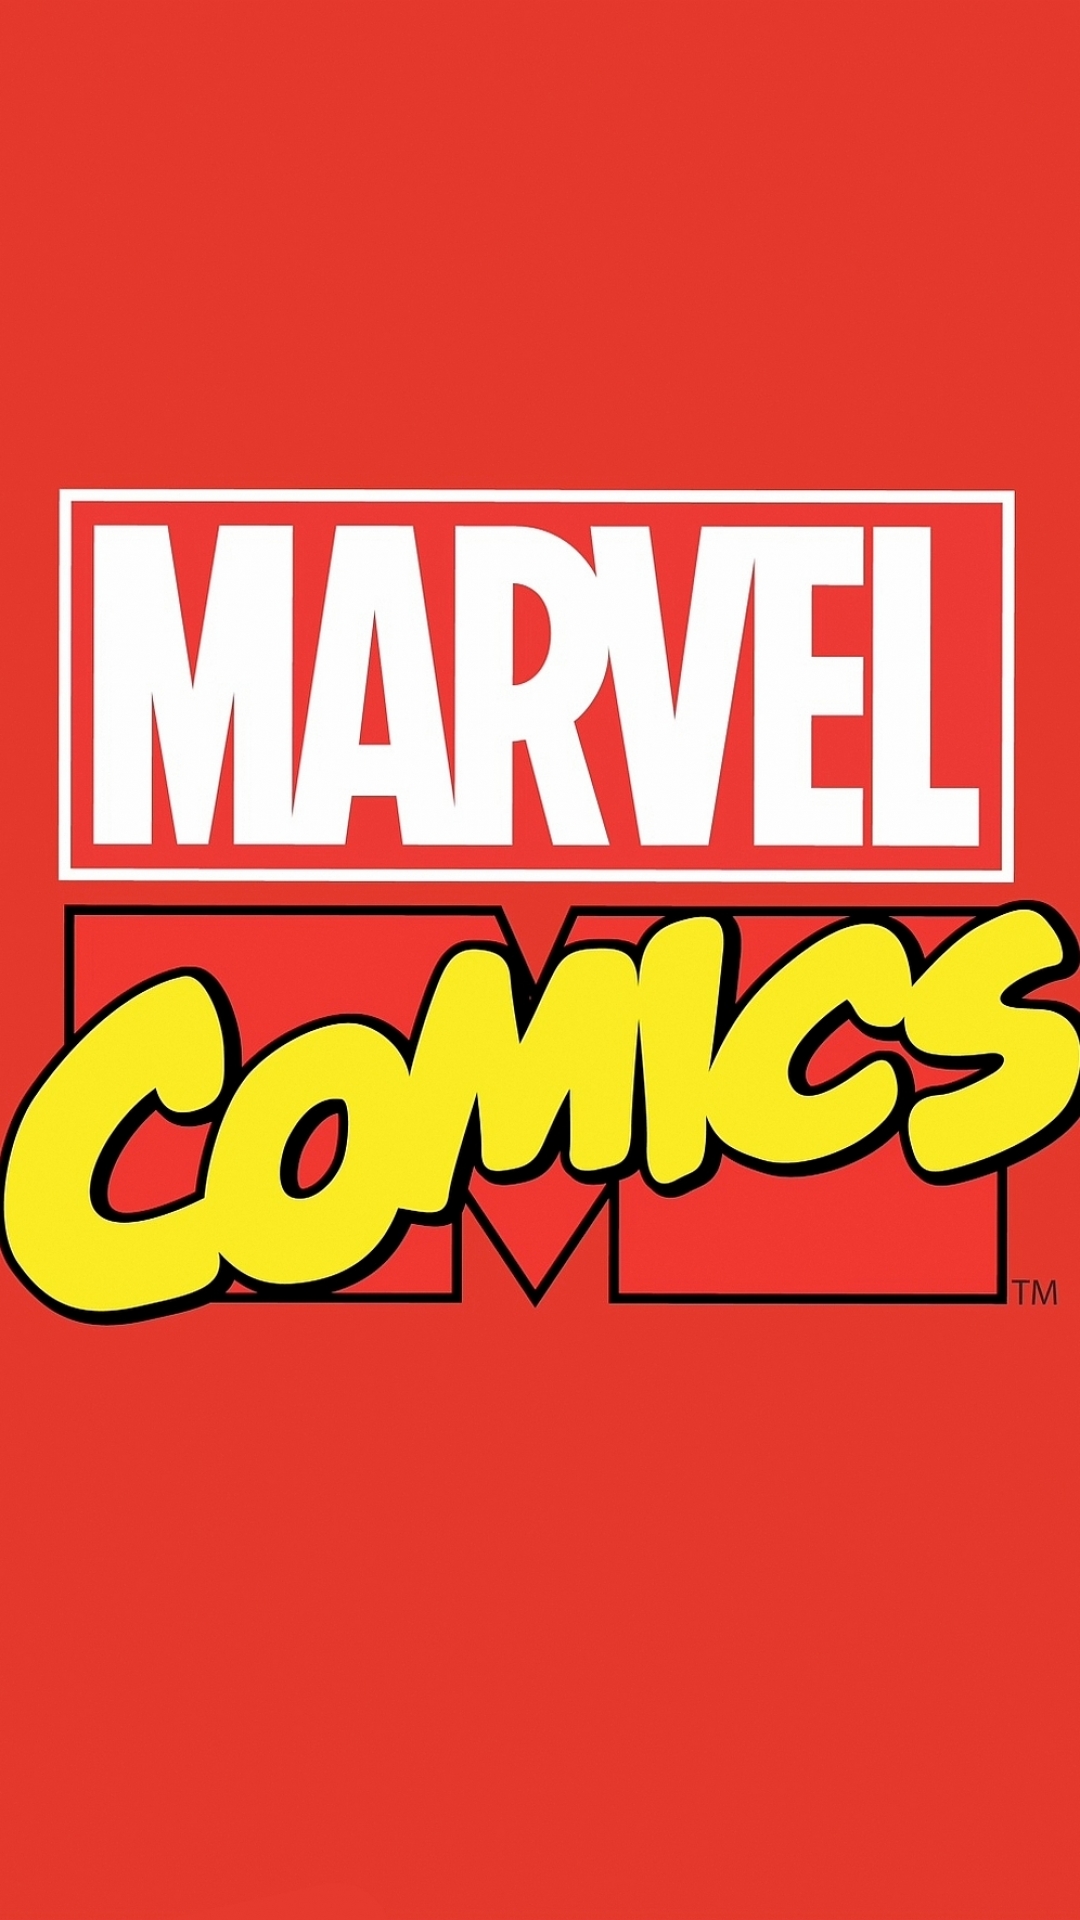 Marvel Comics Phone Wallpaper